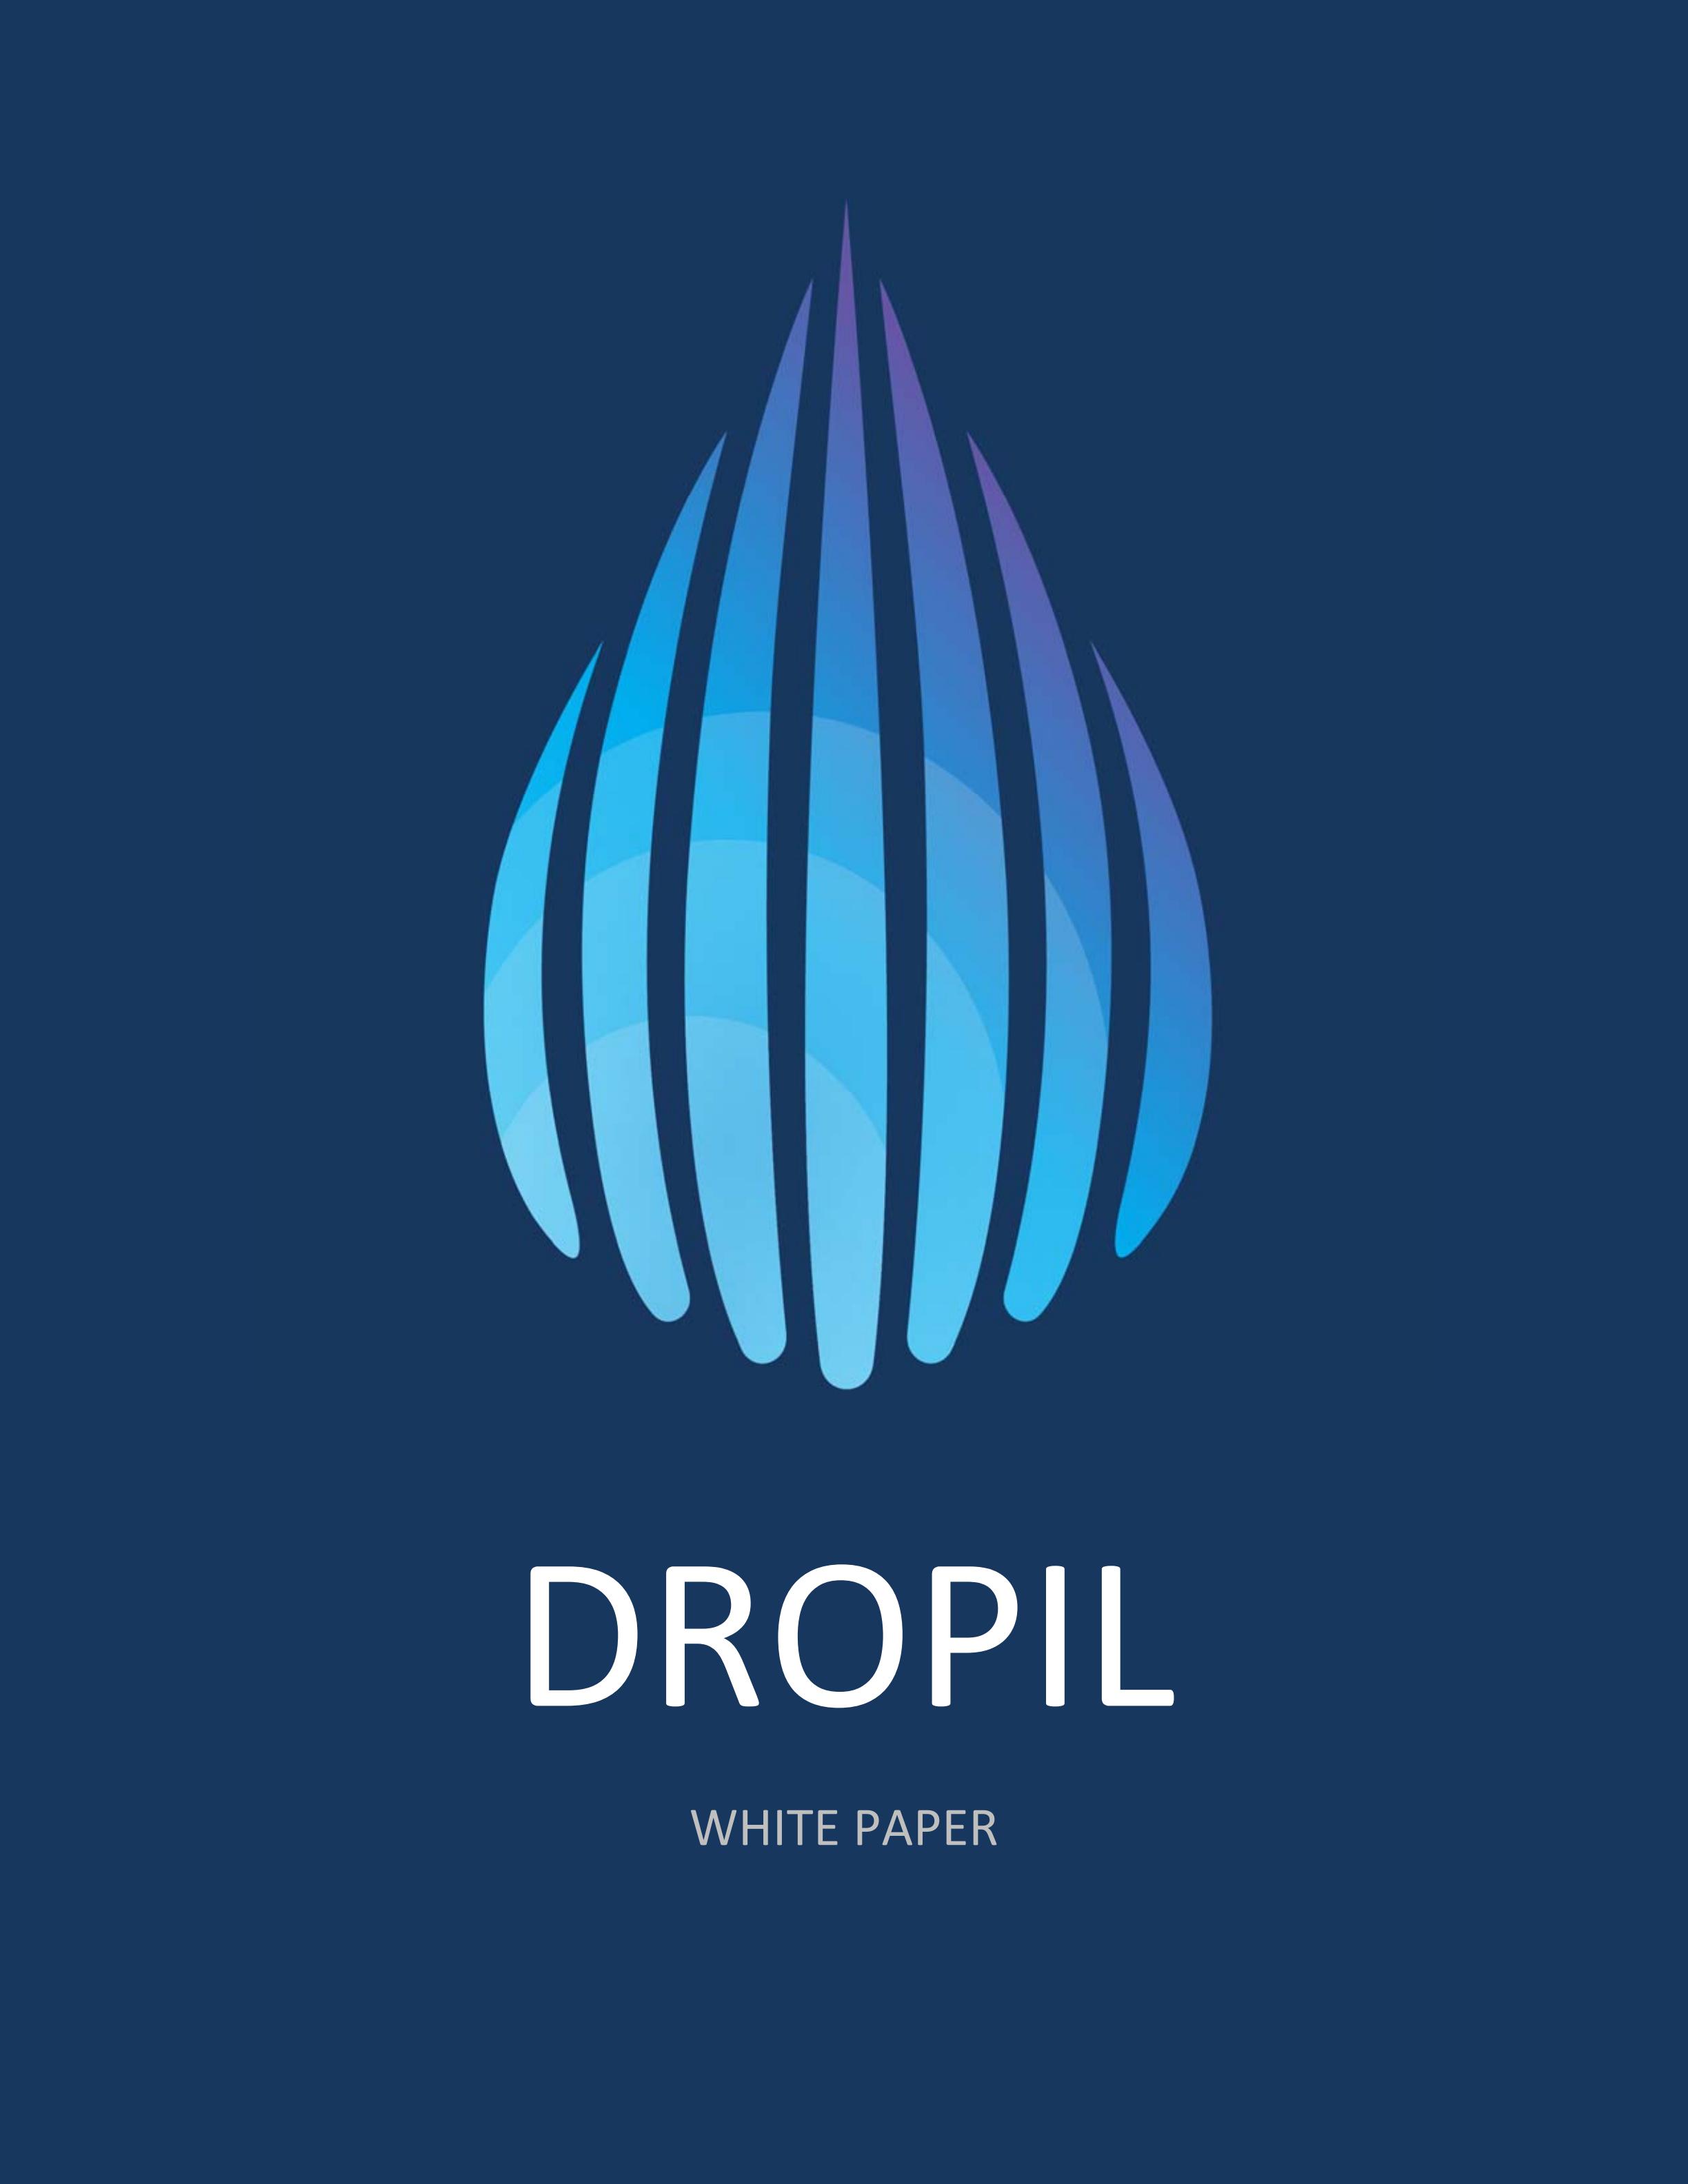 DROP_Dropil_White_Paper_00.jpg